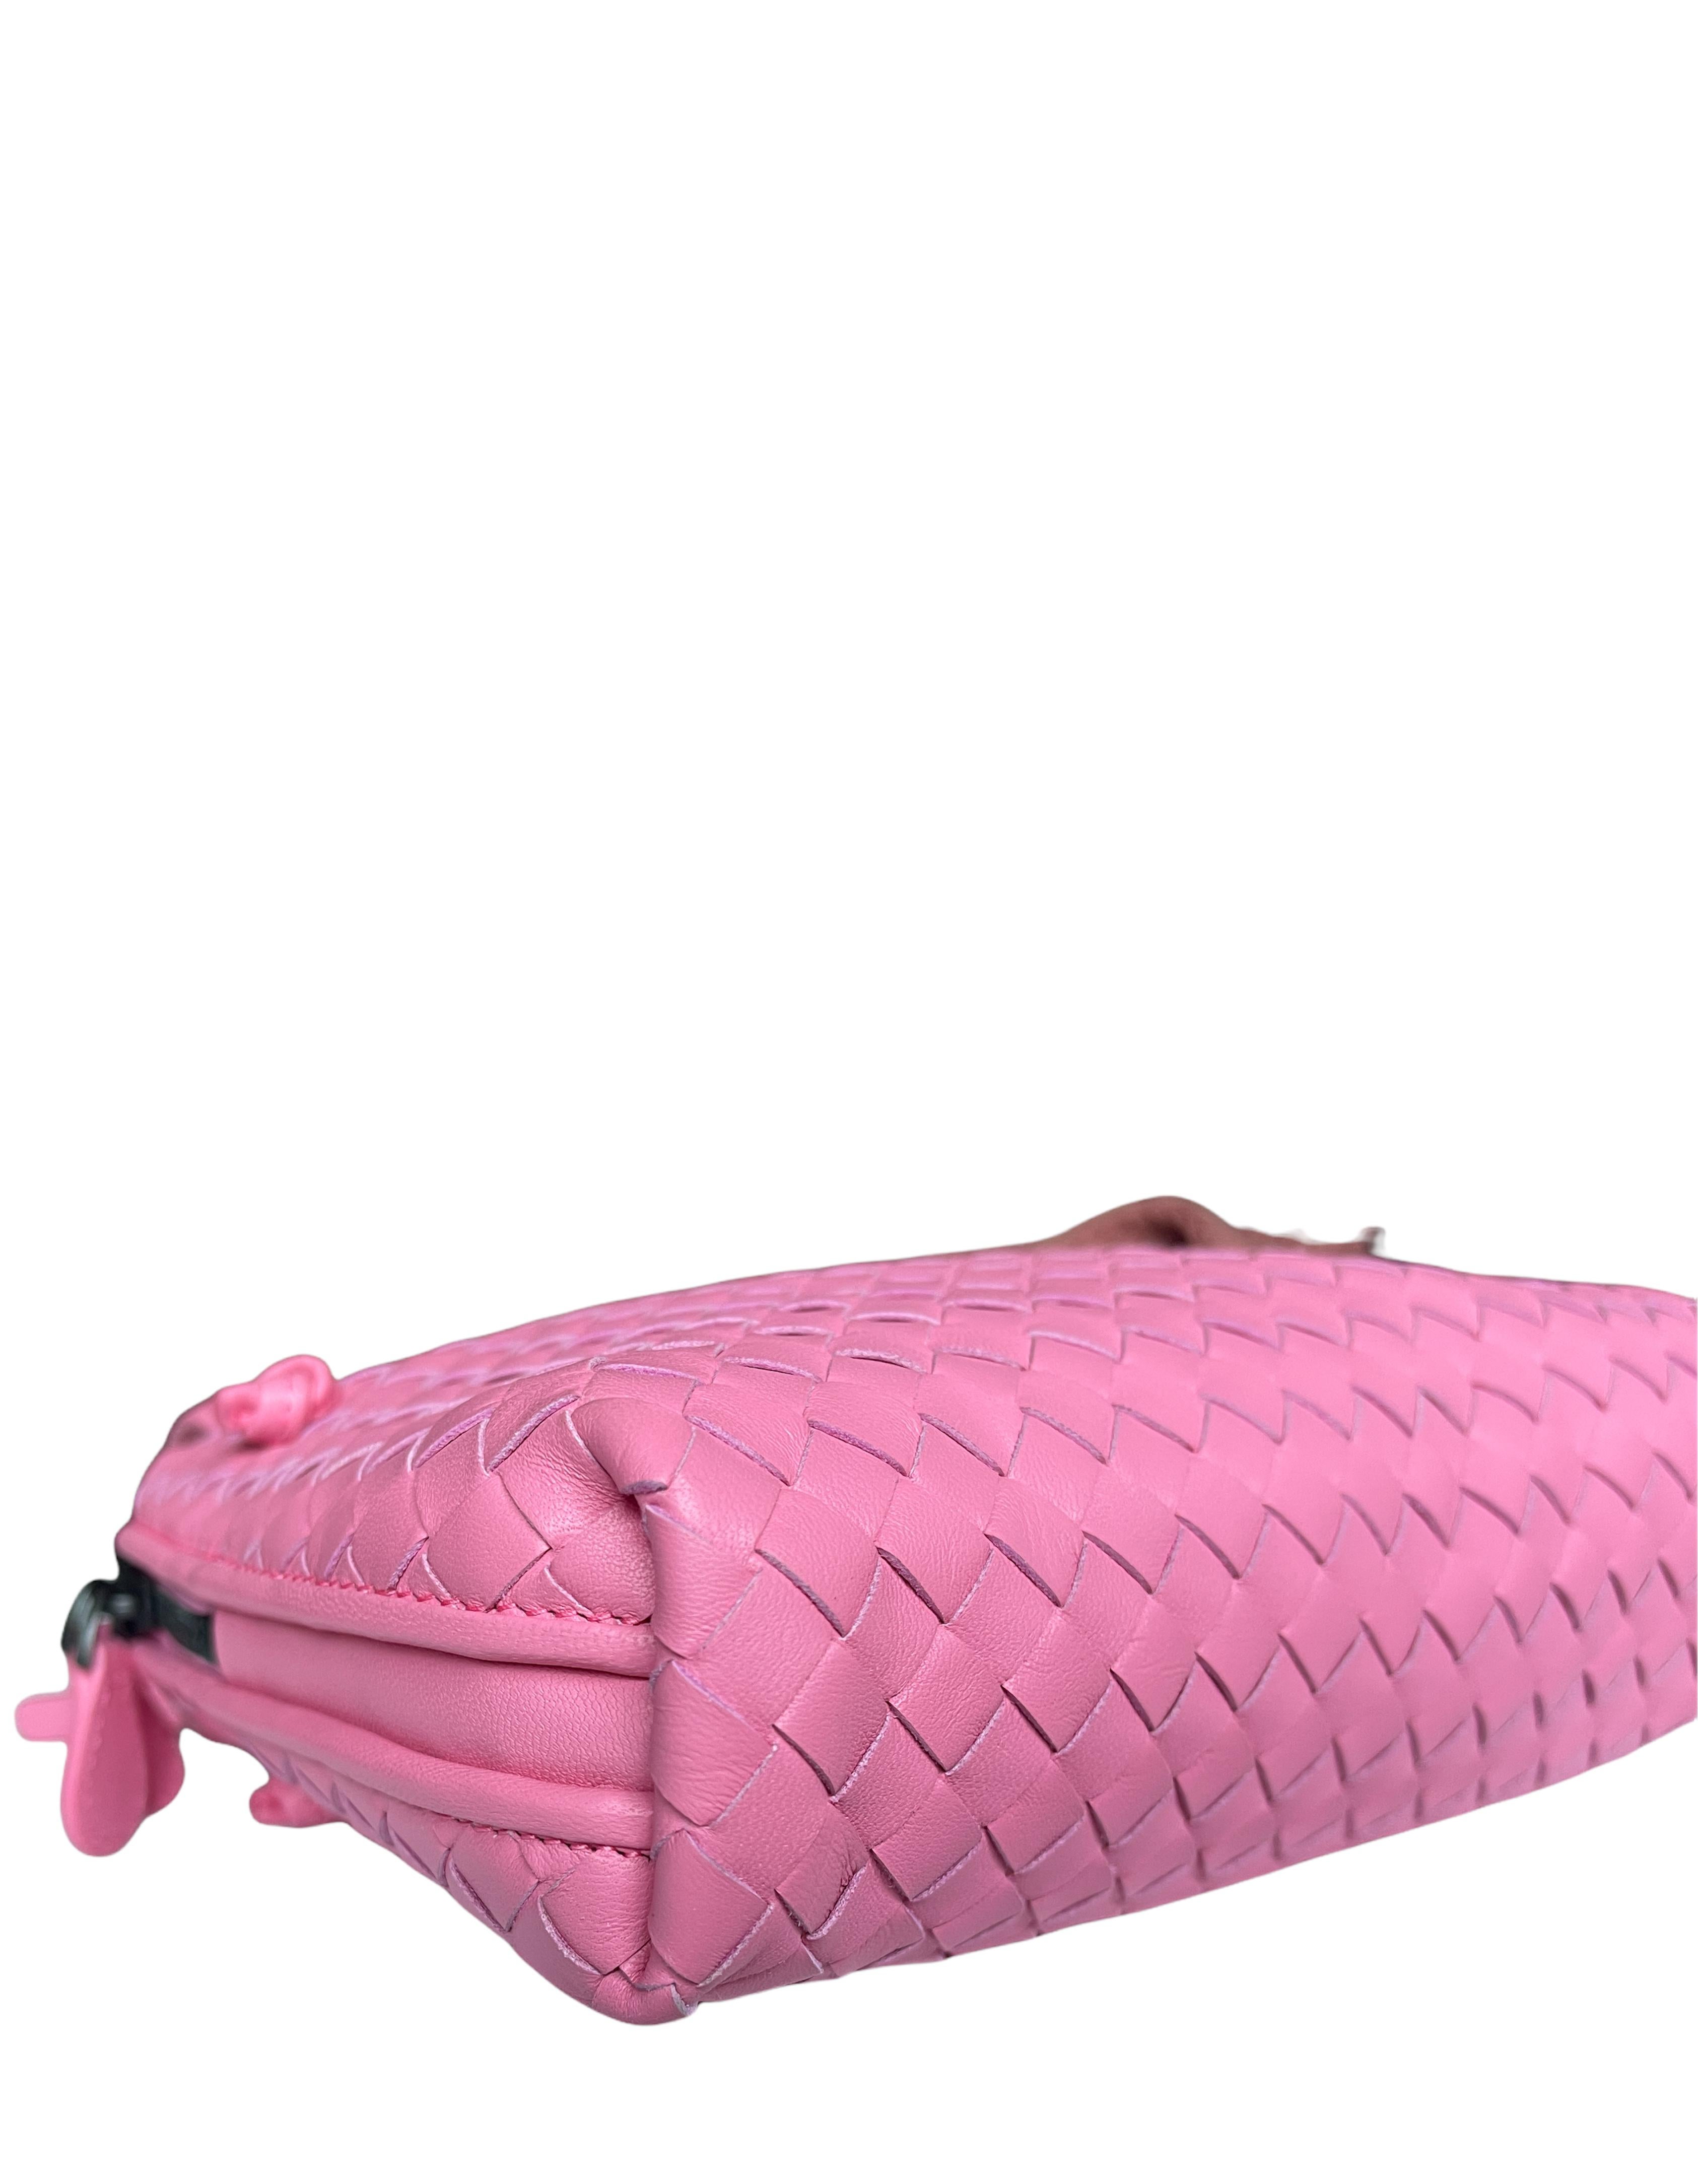 Bottega Veneta 2021 Bubblegum Pink Nappa Intrecciato Nodini Crossbody Bag In Excellent Condition In New York, NY